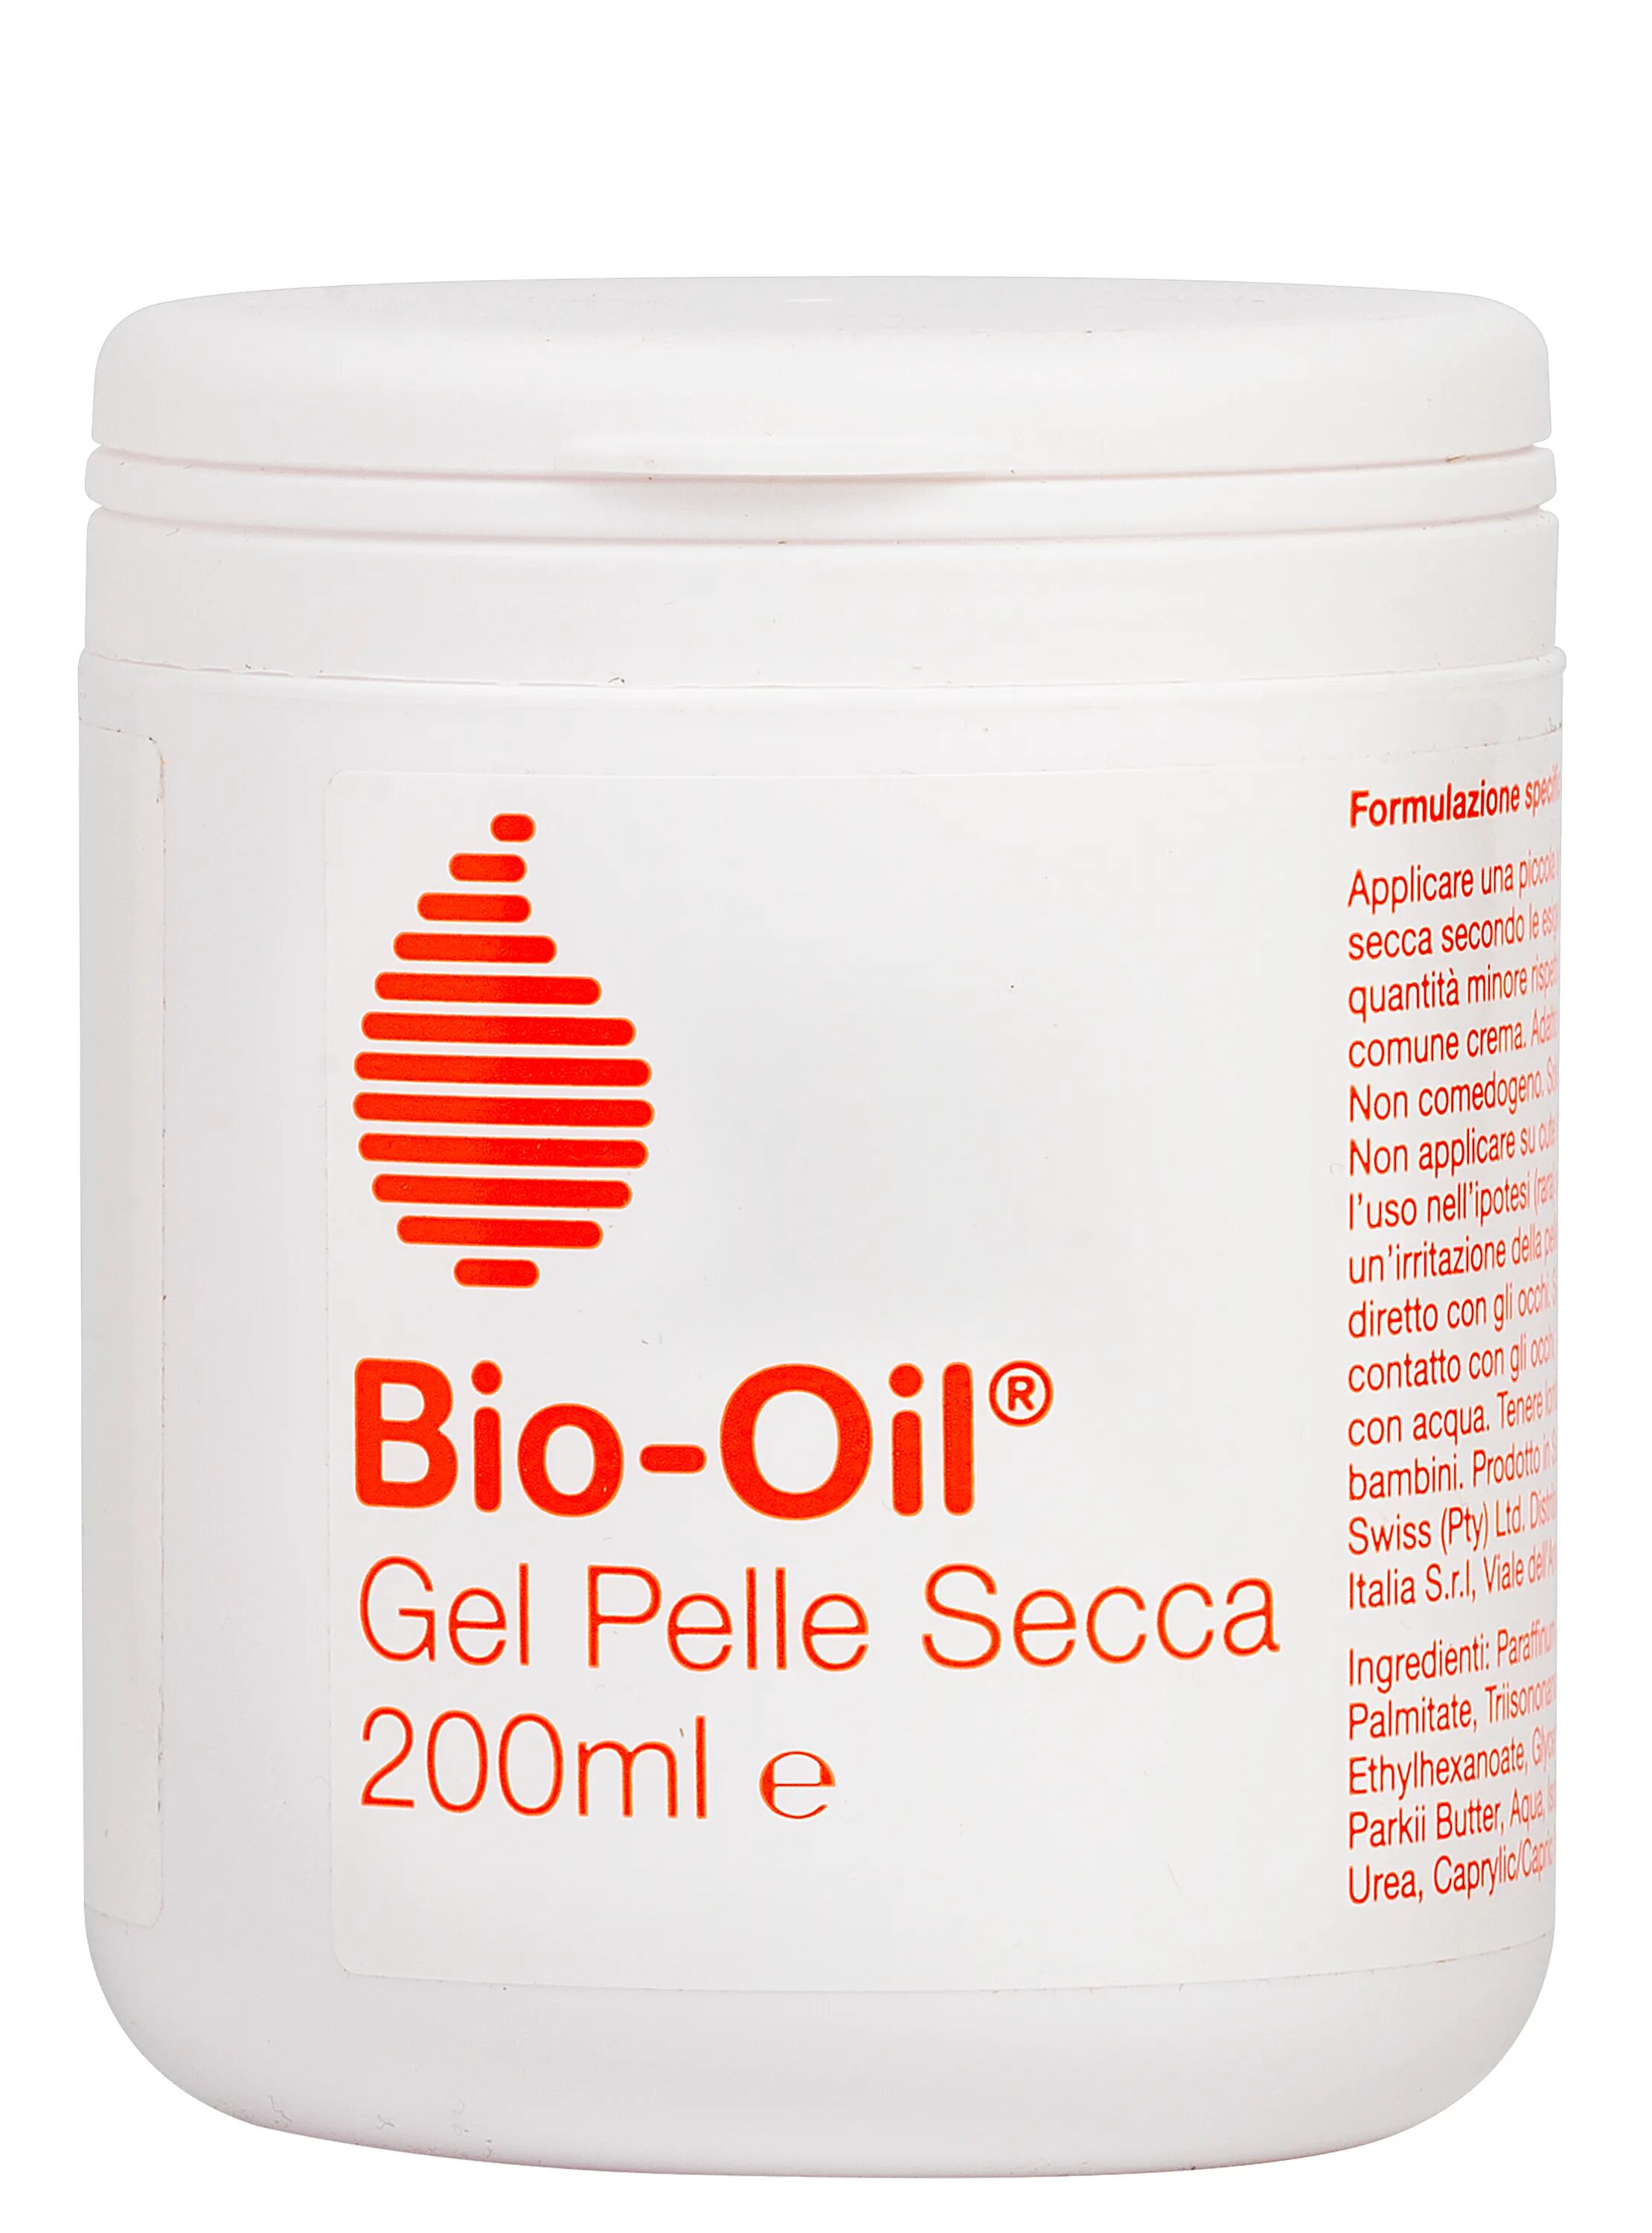 bio-oil gel pelle secca idratante corpo 200 ml